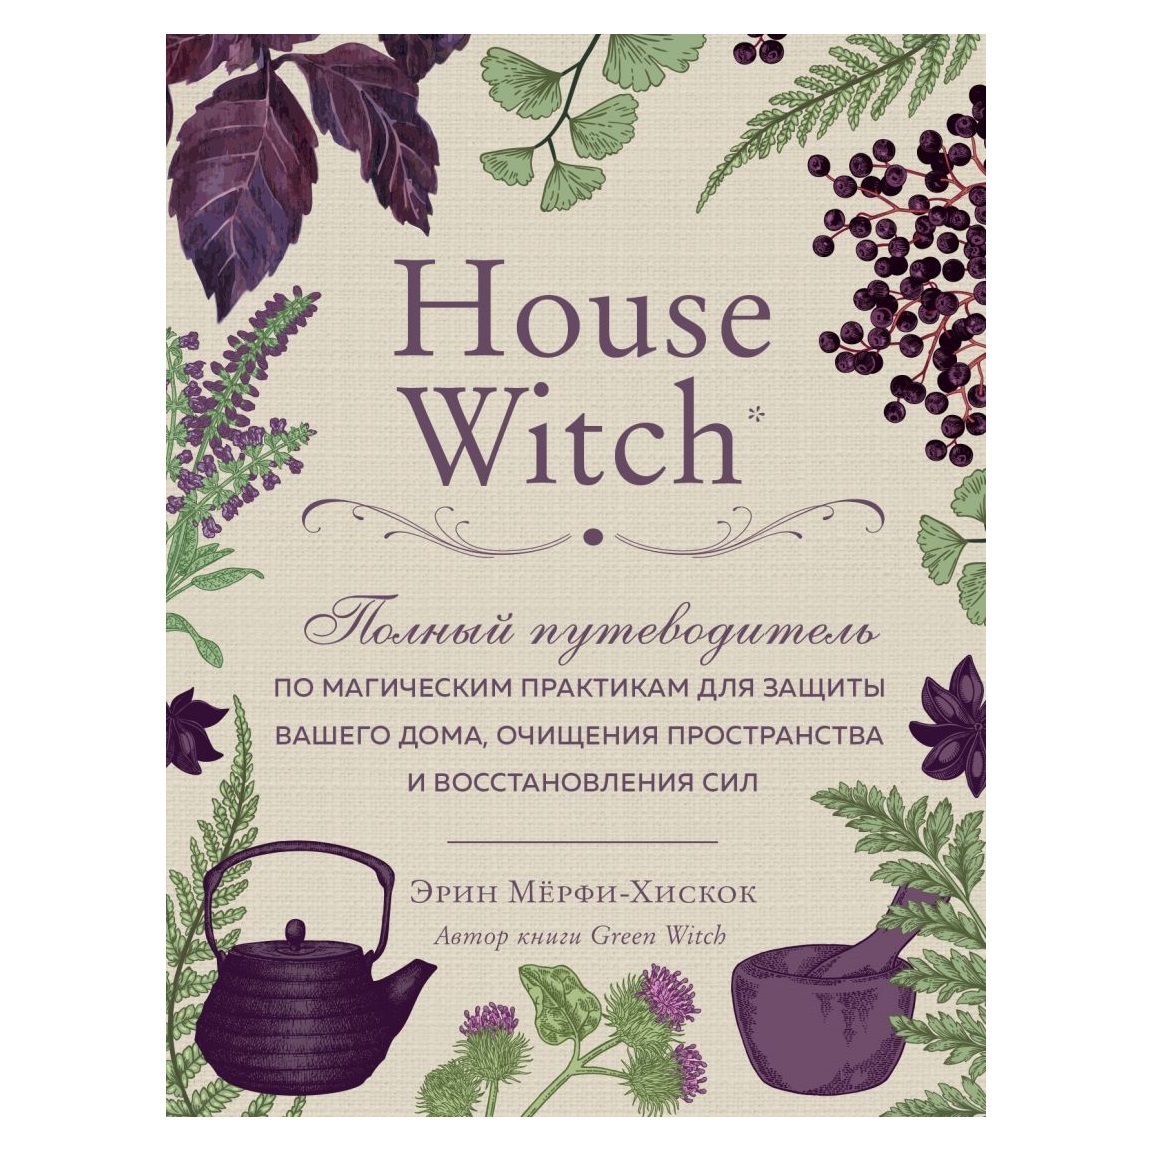 

Эрин Мёрфи-Хискок "House Witch"